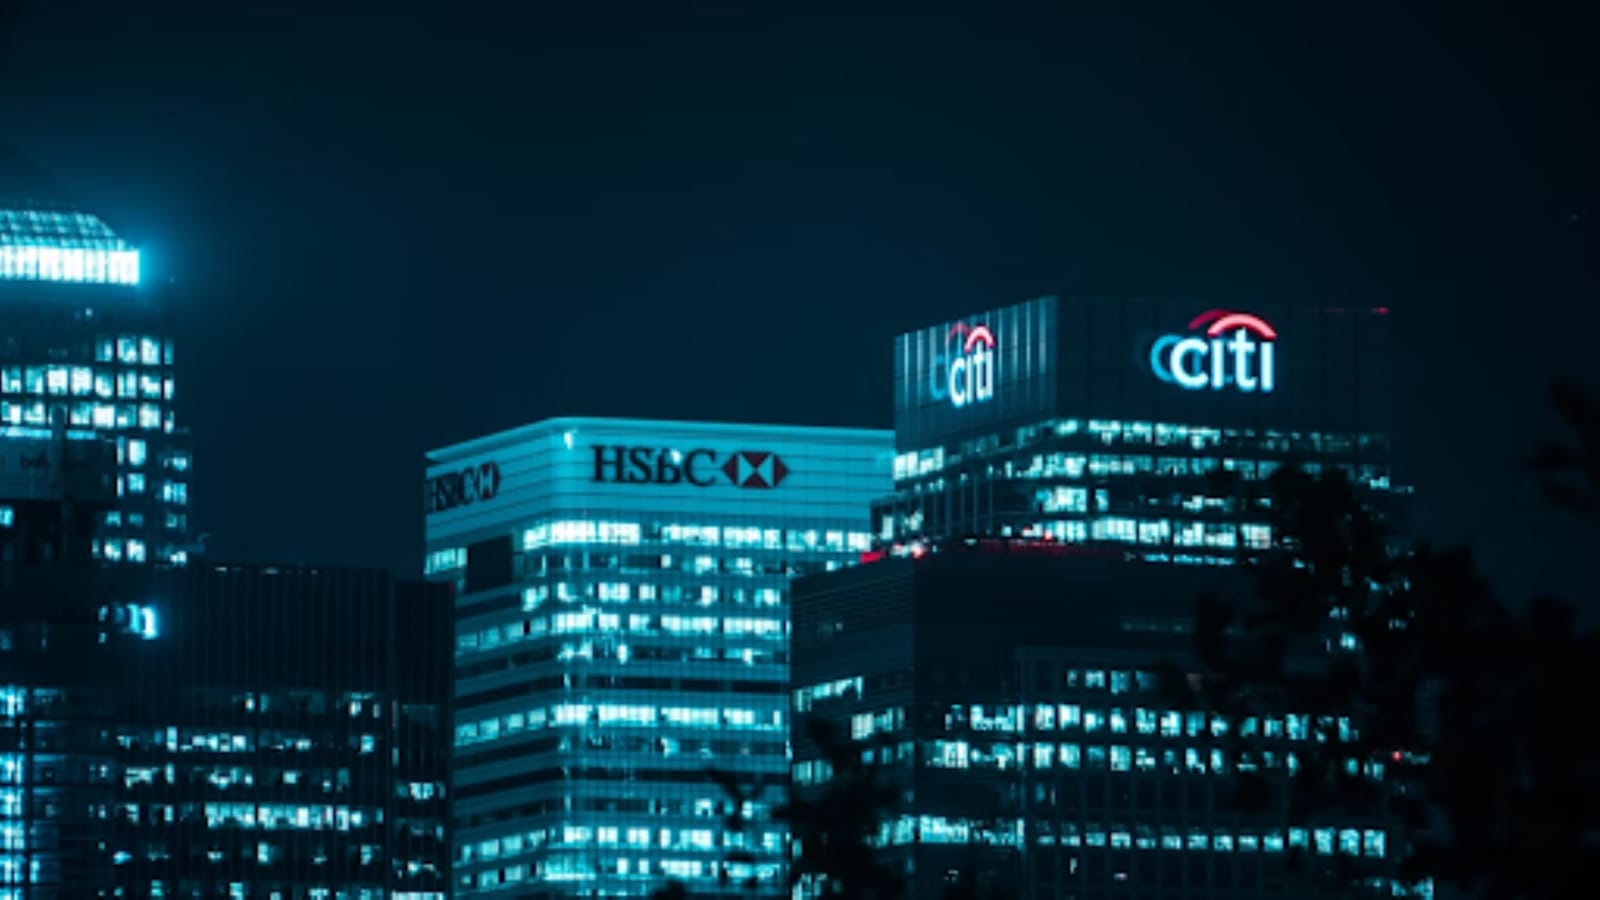 HSBC and Citi at night